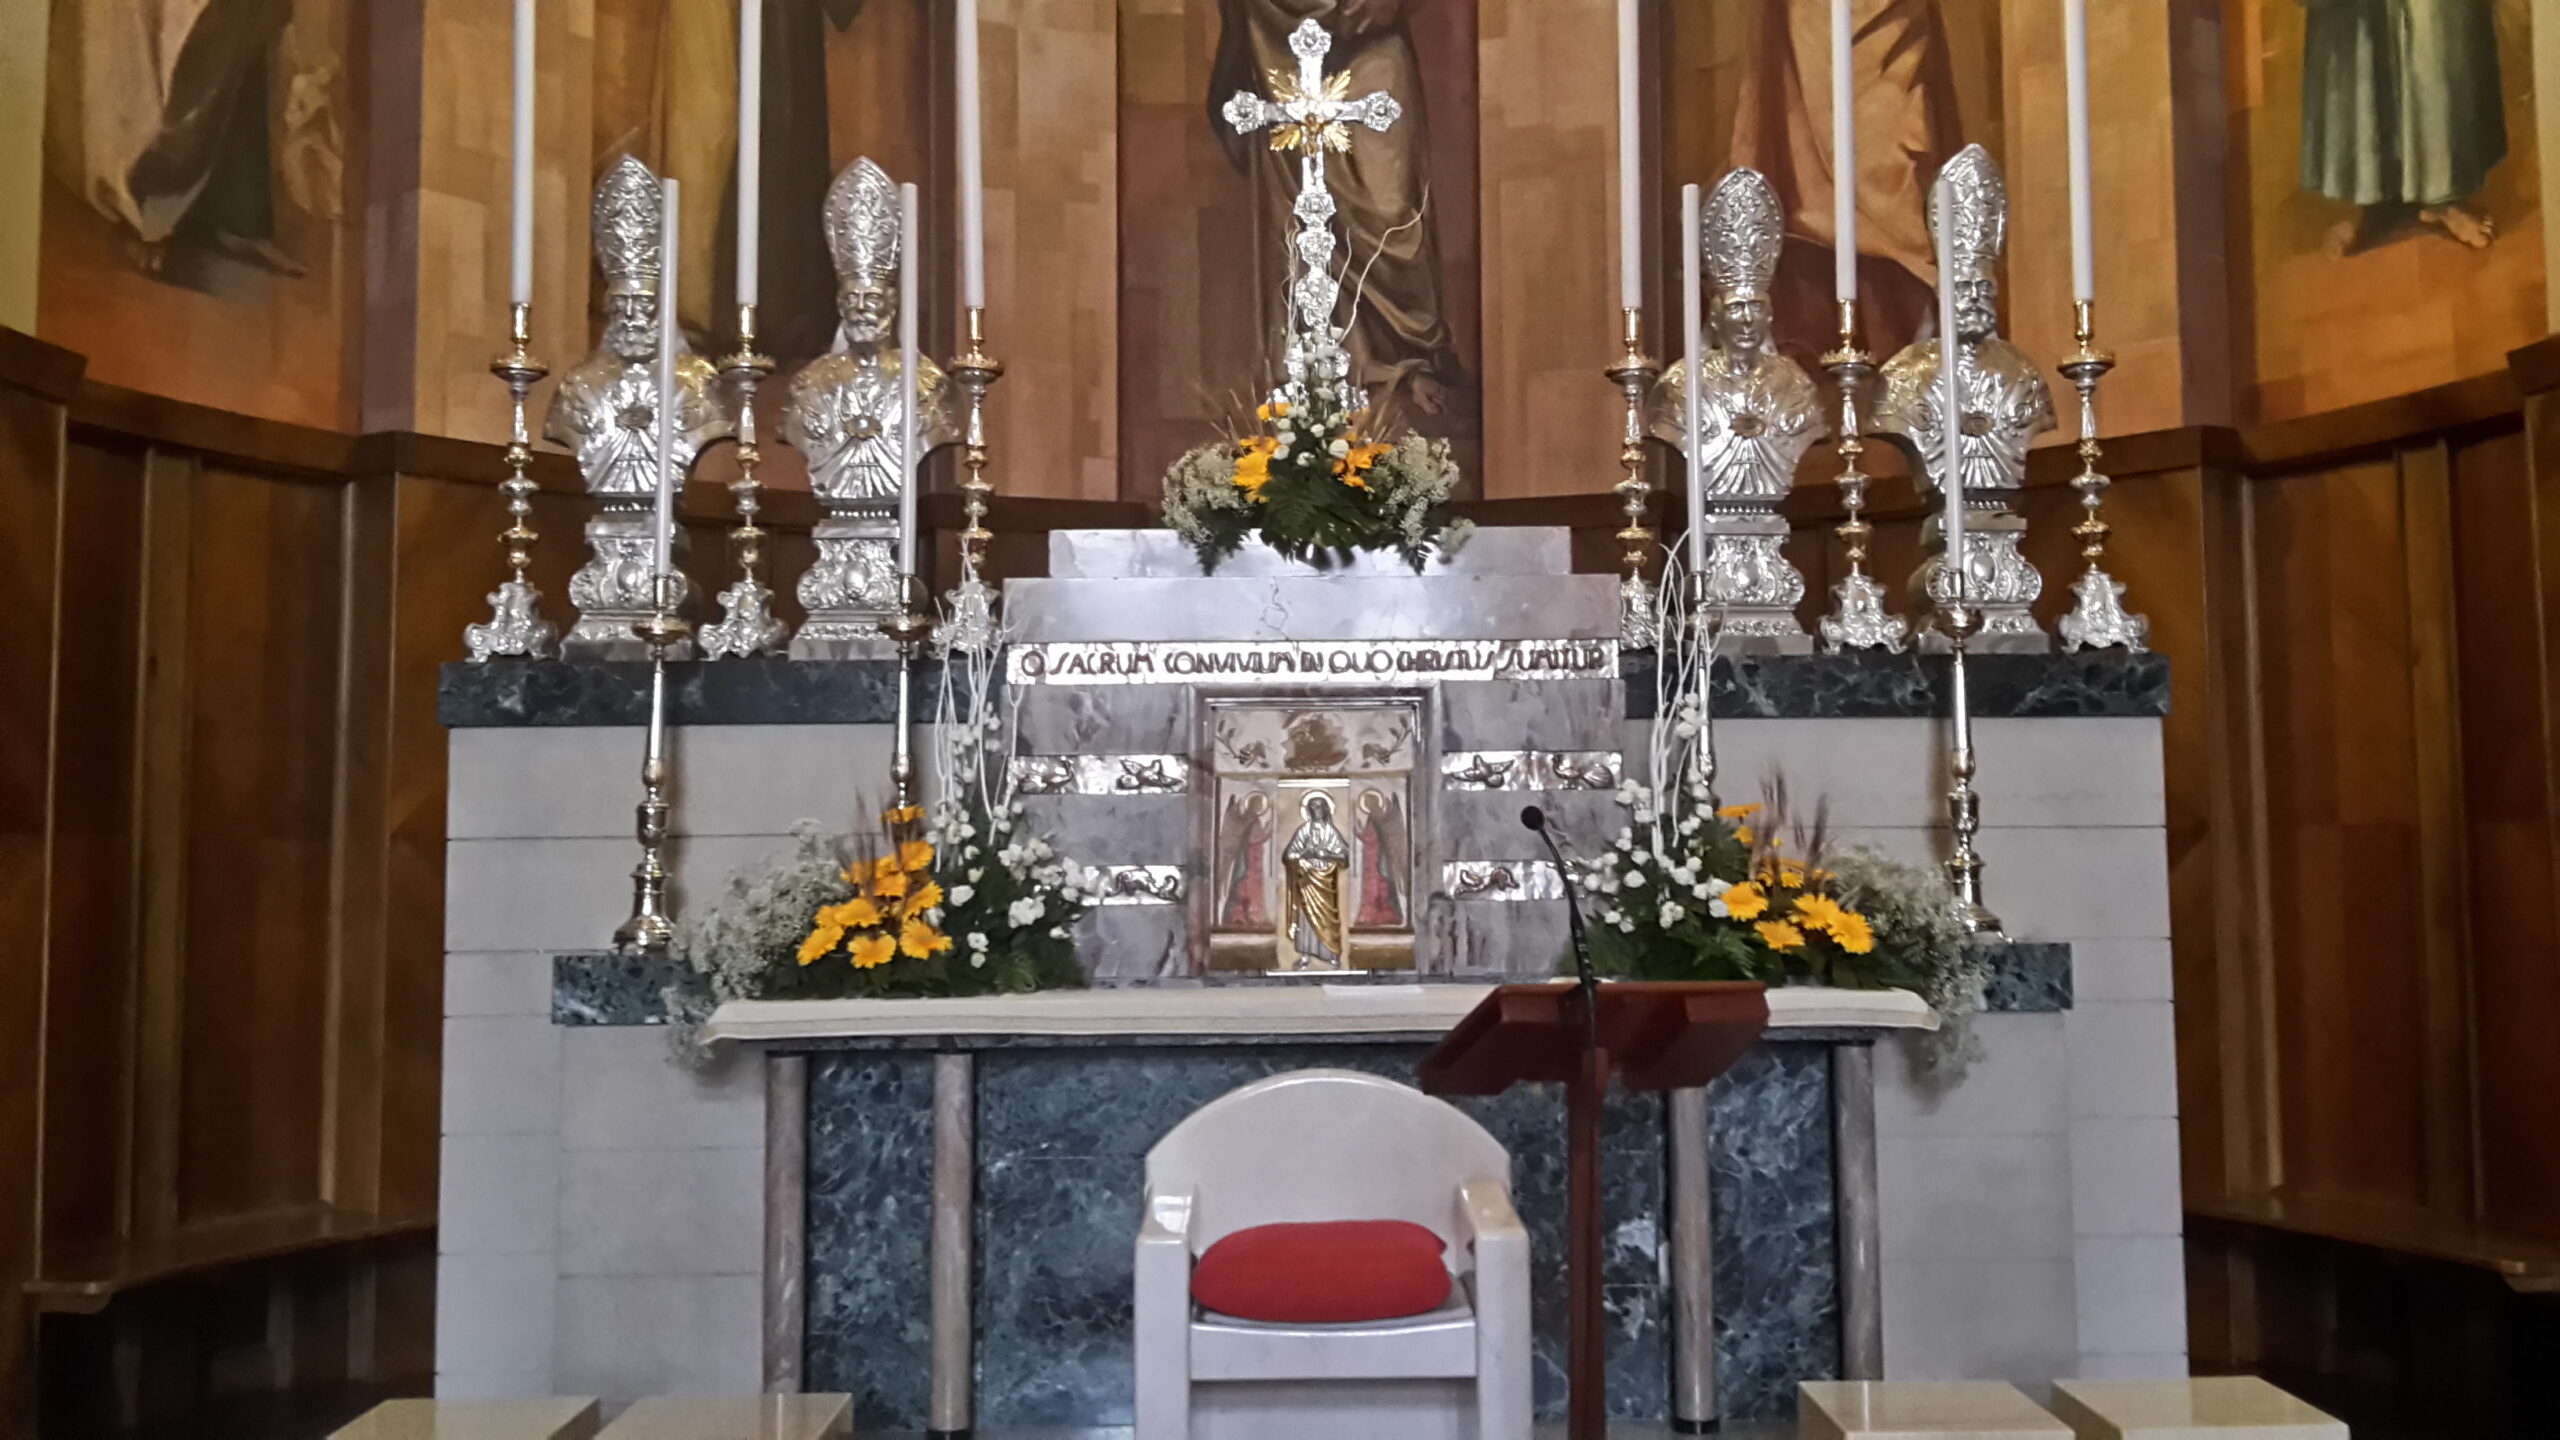 Altare con diverse composizioni floreali con gerbere gialle e piccole margherite bianche